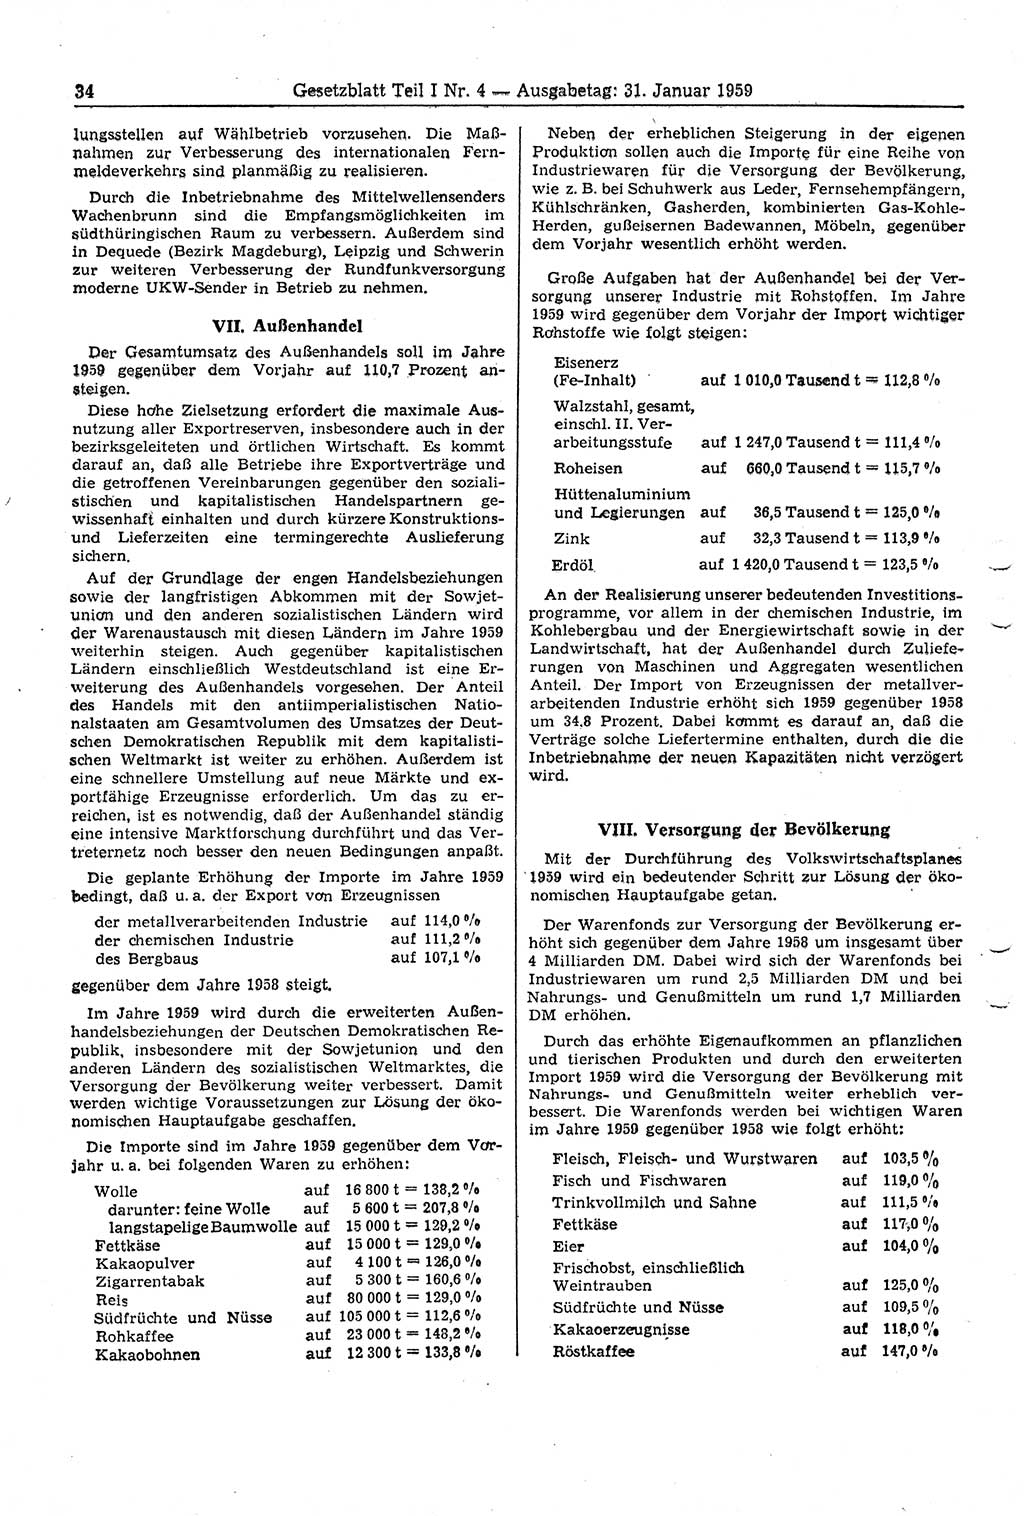 Gesetzblatt (GBl.) der Deutschen Demokratischen Republik (DDR) Teil Ⅰ 1959, Seite 34 (GBl. DDR Ⅰ 1959, S. 34)